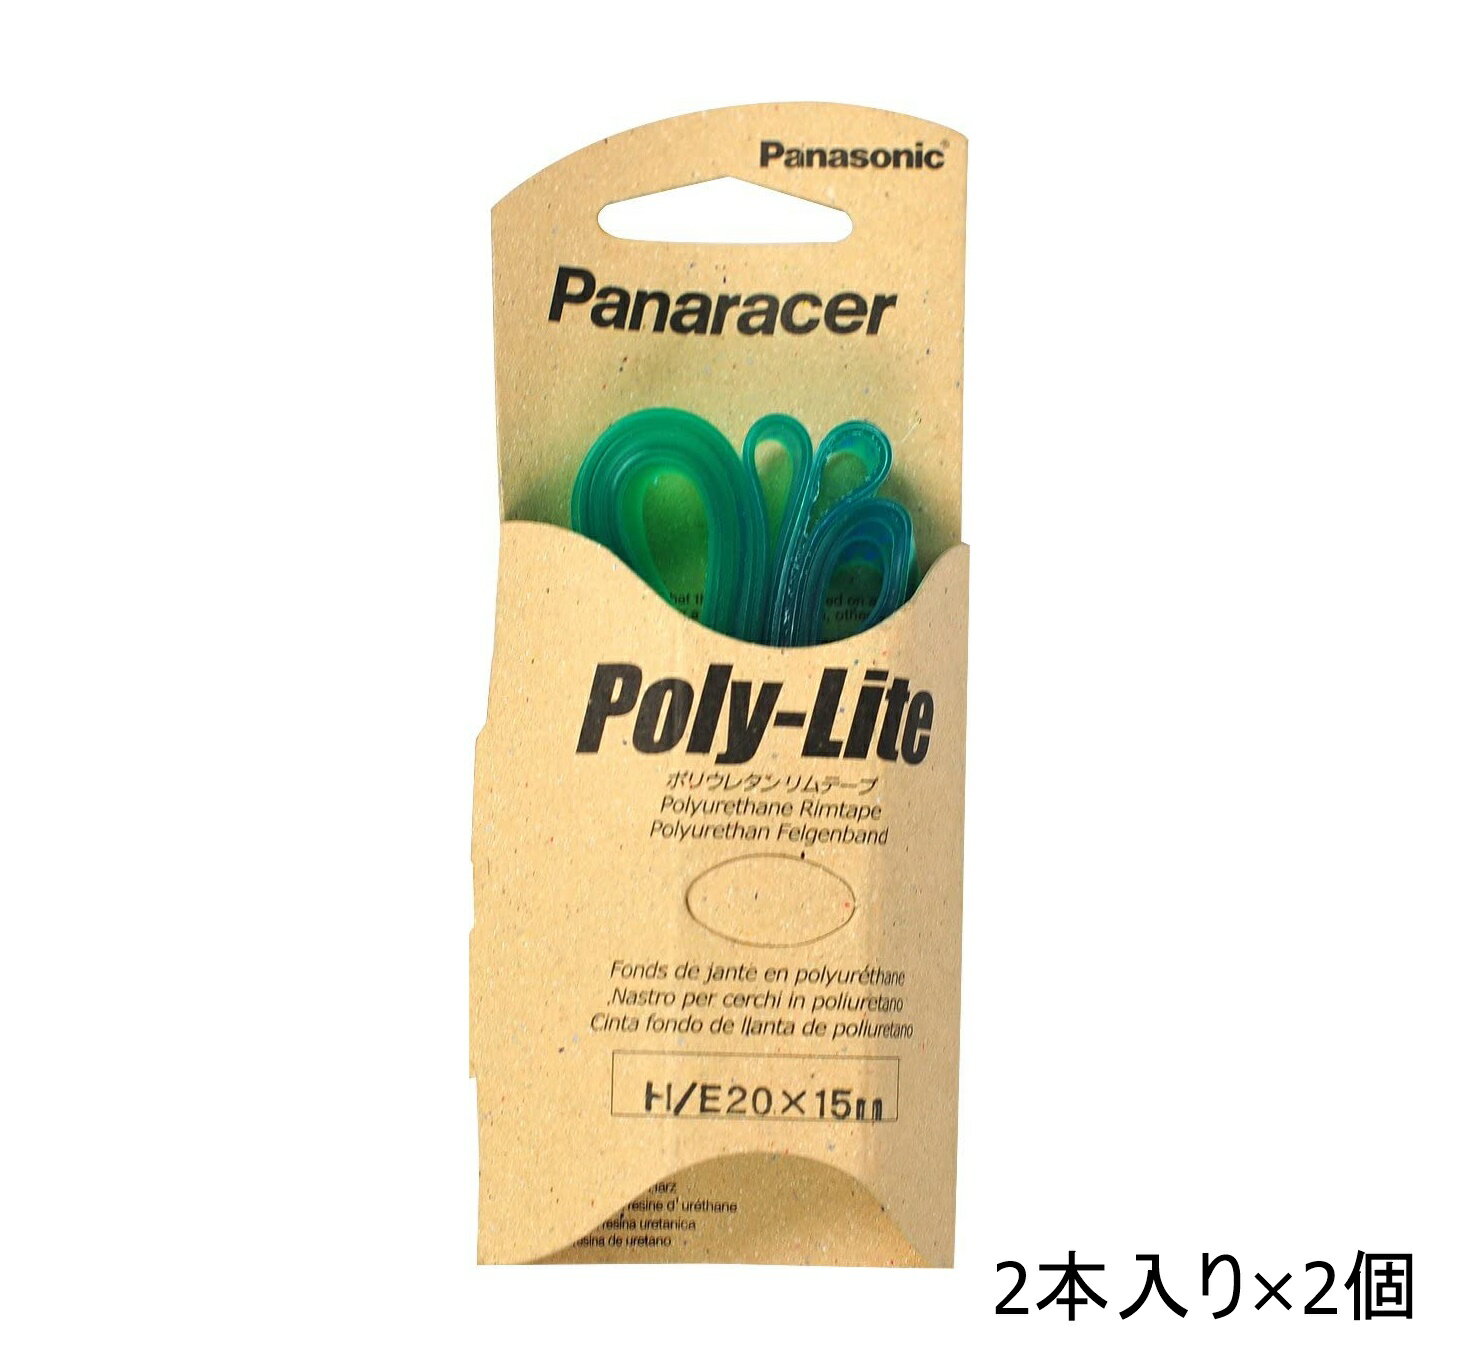 【送料無料】 パナレーサー リムテープ Poly-Lite ポリウレタンリムテープ 2本入り 2セット 19